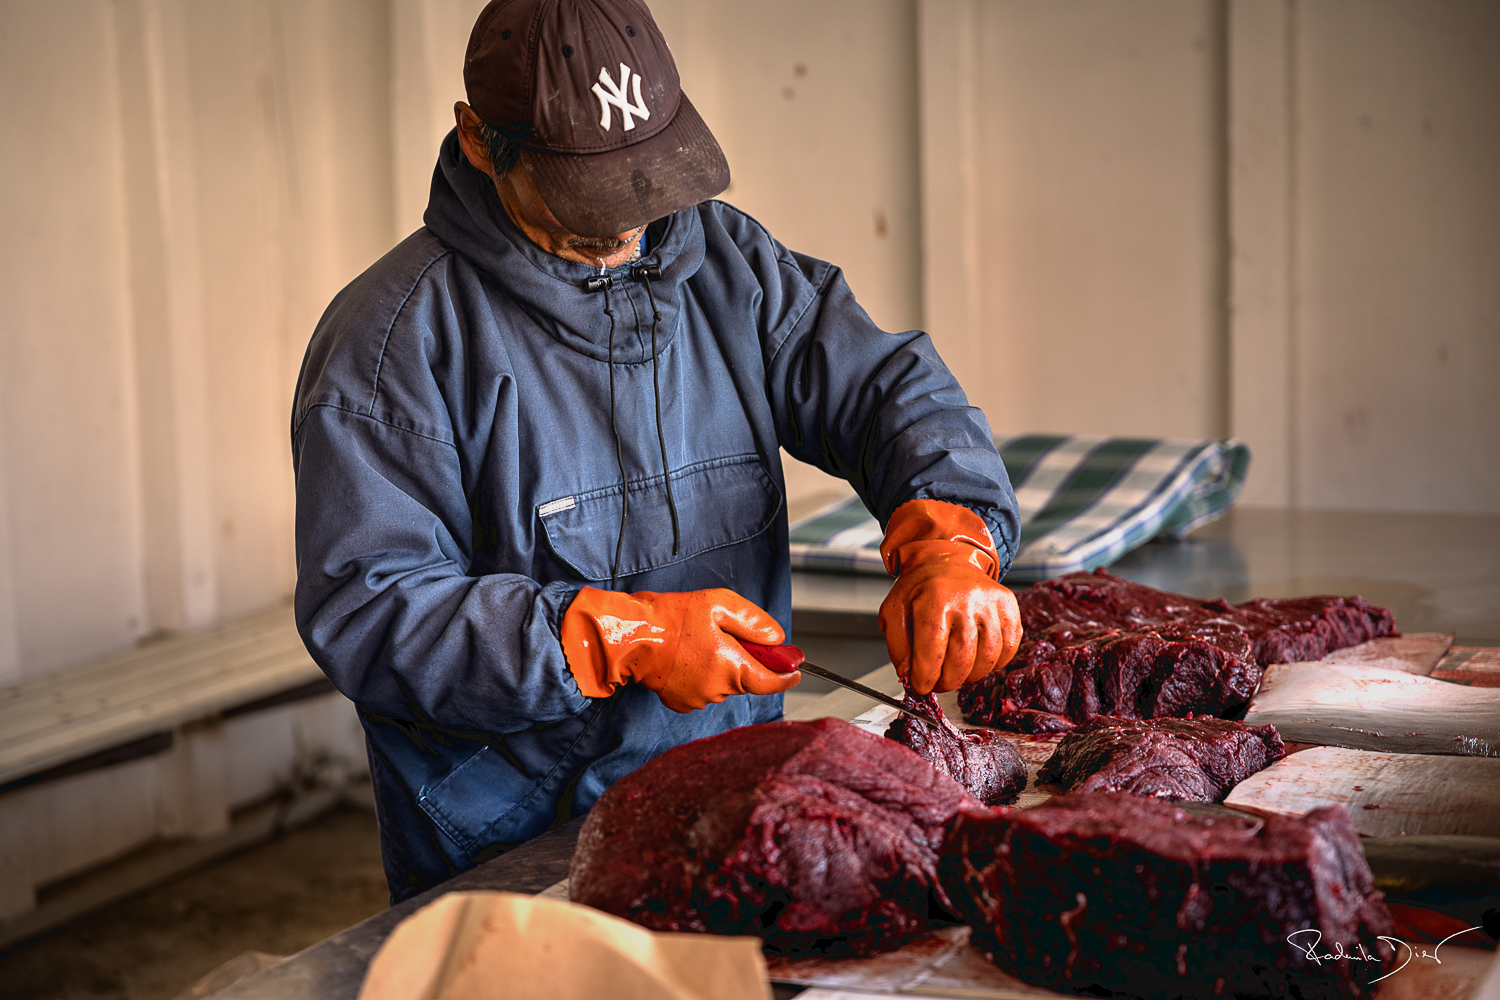 Walfleisch gehört in Grönland zur traditionellen Nahrung, ein Wal ernährt das ganze Dorf.